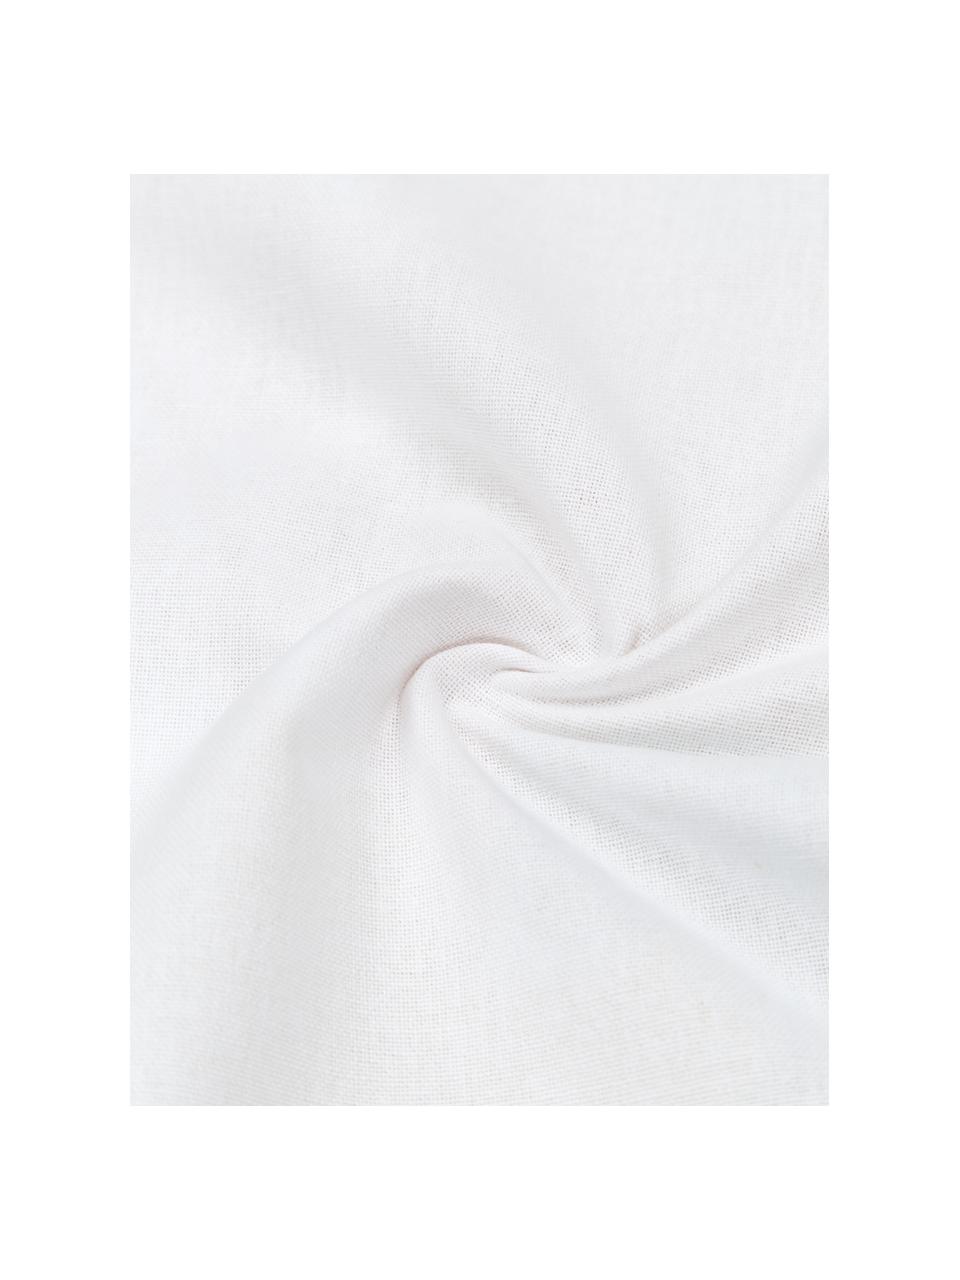 Poszewka na poduszkę z bawełny Penelope, 100% bawełna, Wielobarwny, S 50 x D 50 cm